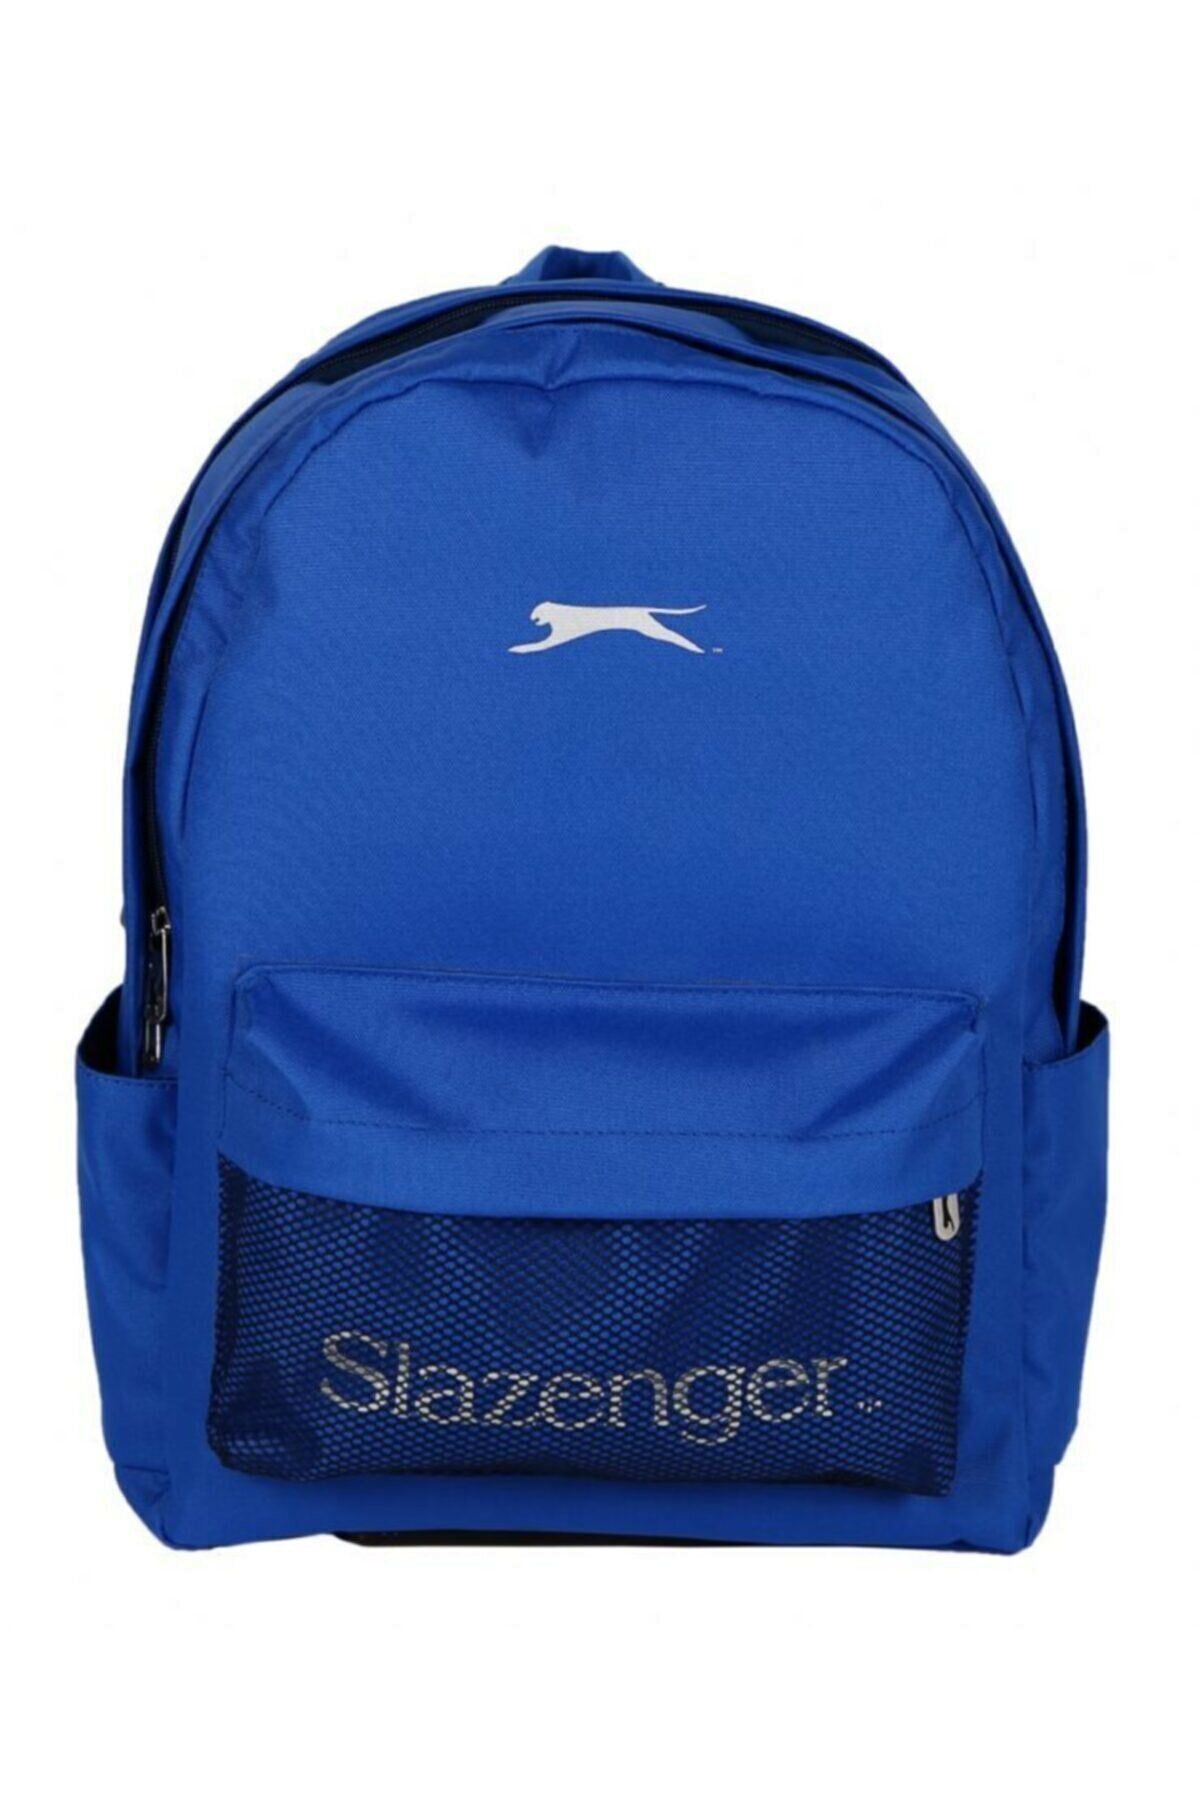 Slazenger File Cepli Okul Çantası - Mavi